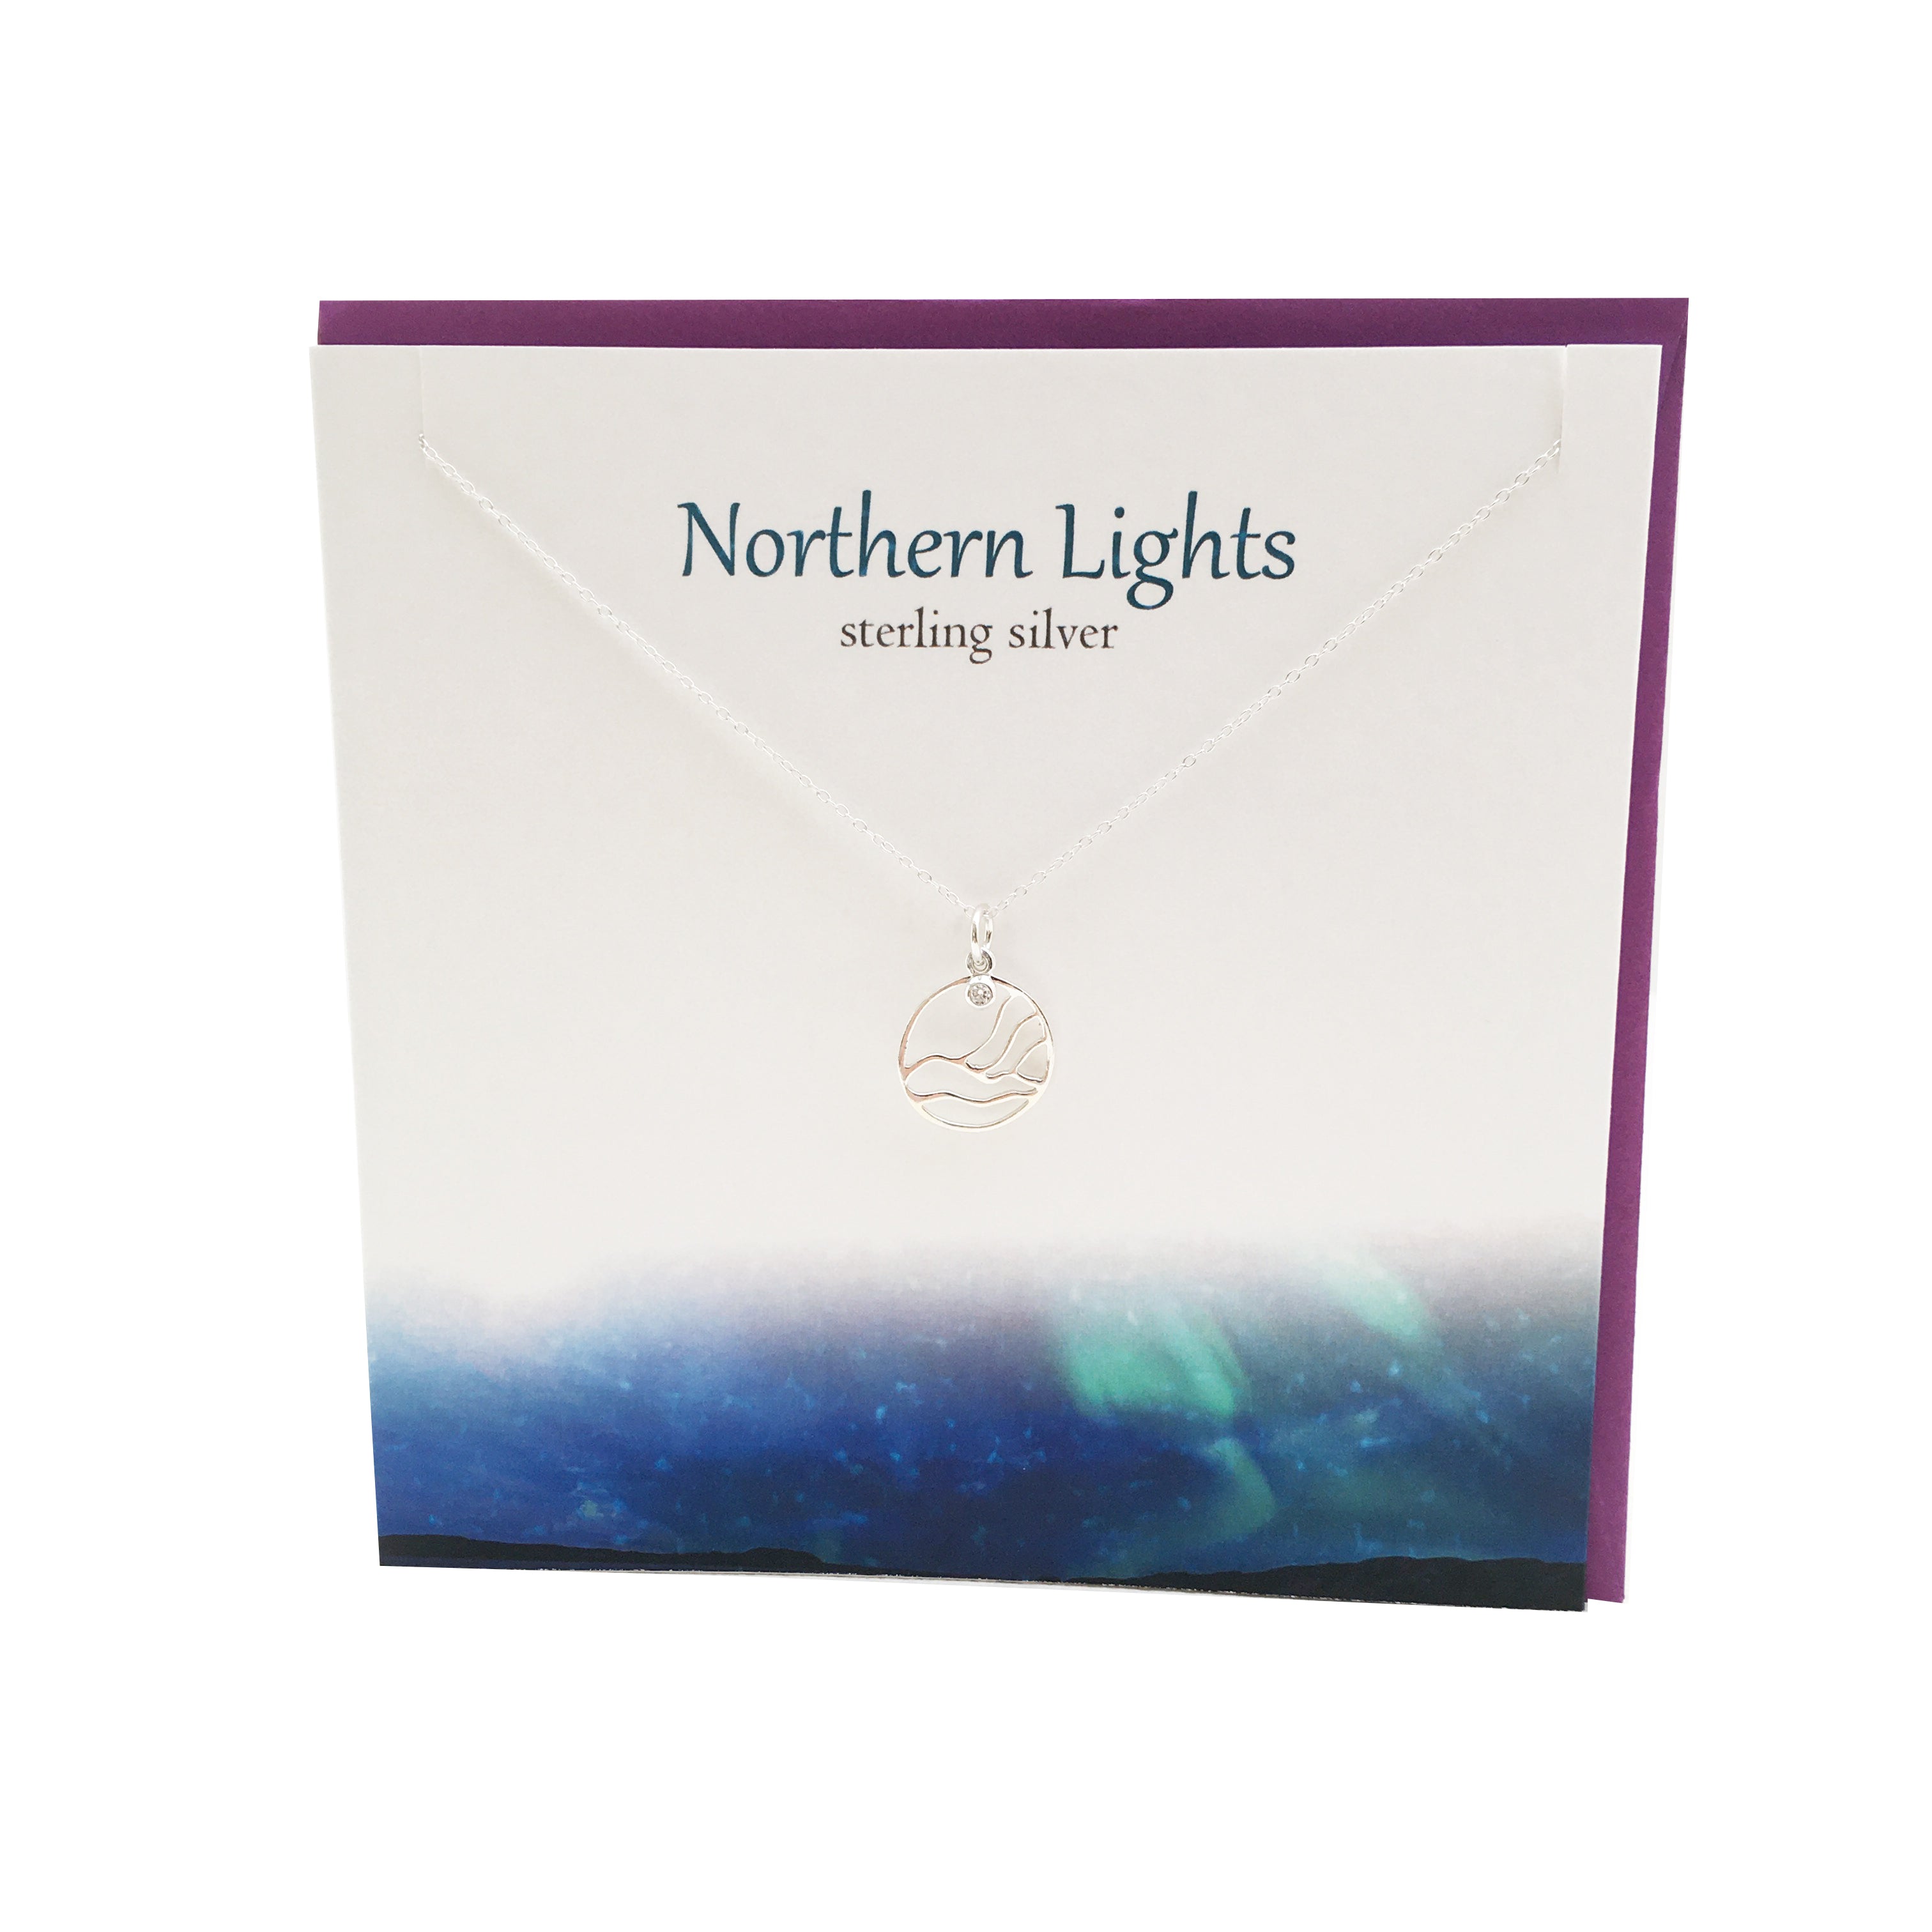 Northern Lights Aurora Borealis silver pendant | The Silver Studio Scotland